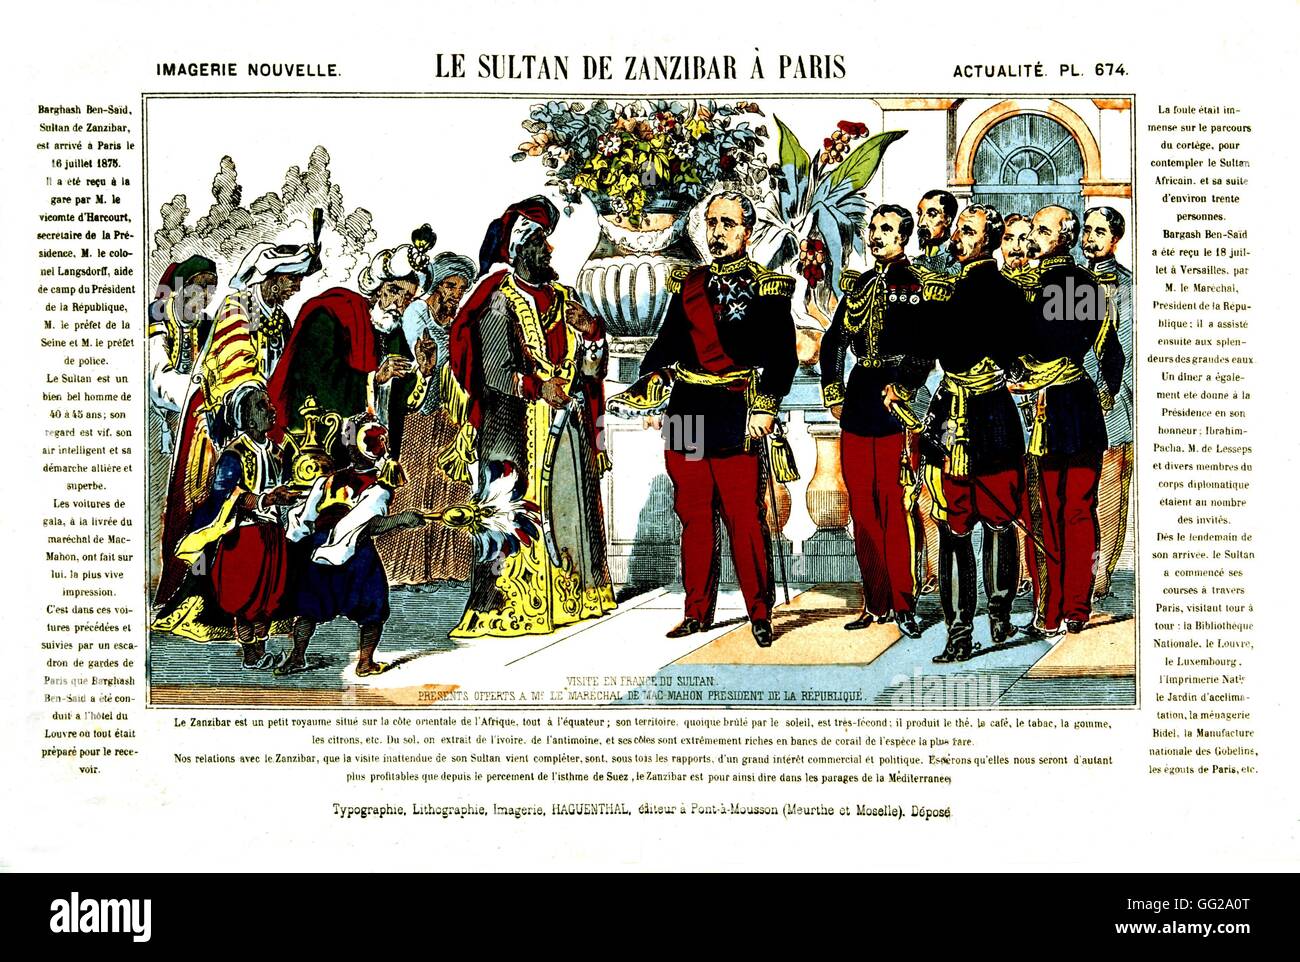 Il Sultano di Zanzibar la visita ufficiale a Parigi. Egli viene accolto dal Presidente francese della Repubblica Mac Mahon. 1875 Francia Parigi, Museo Carnavalet Foto Stock